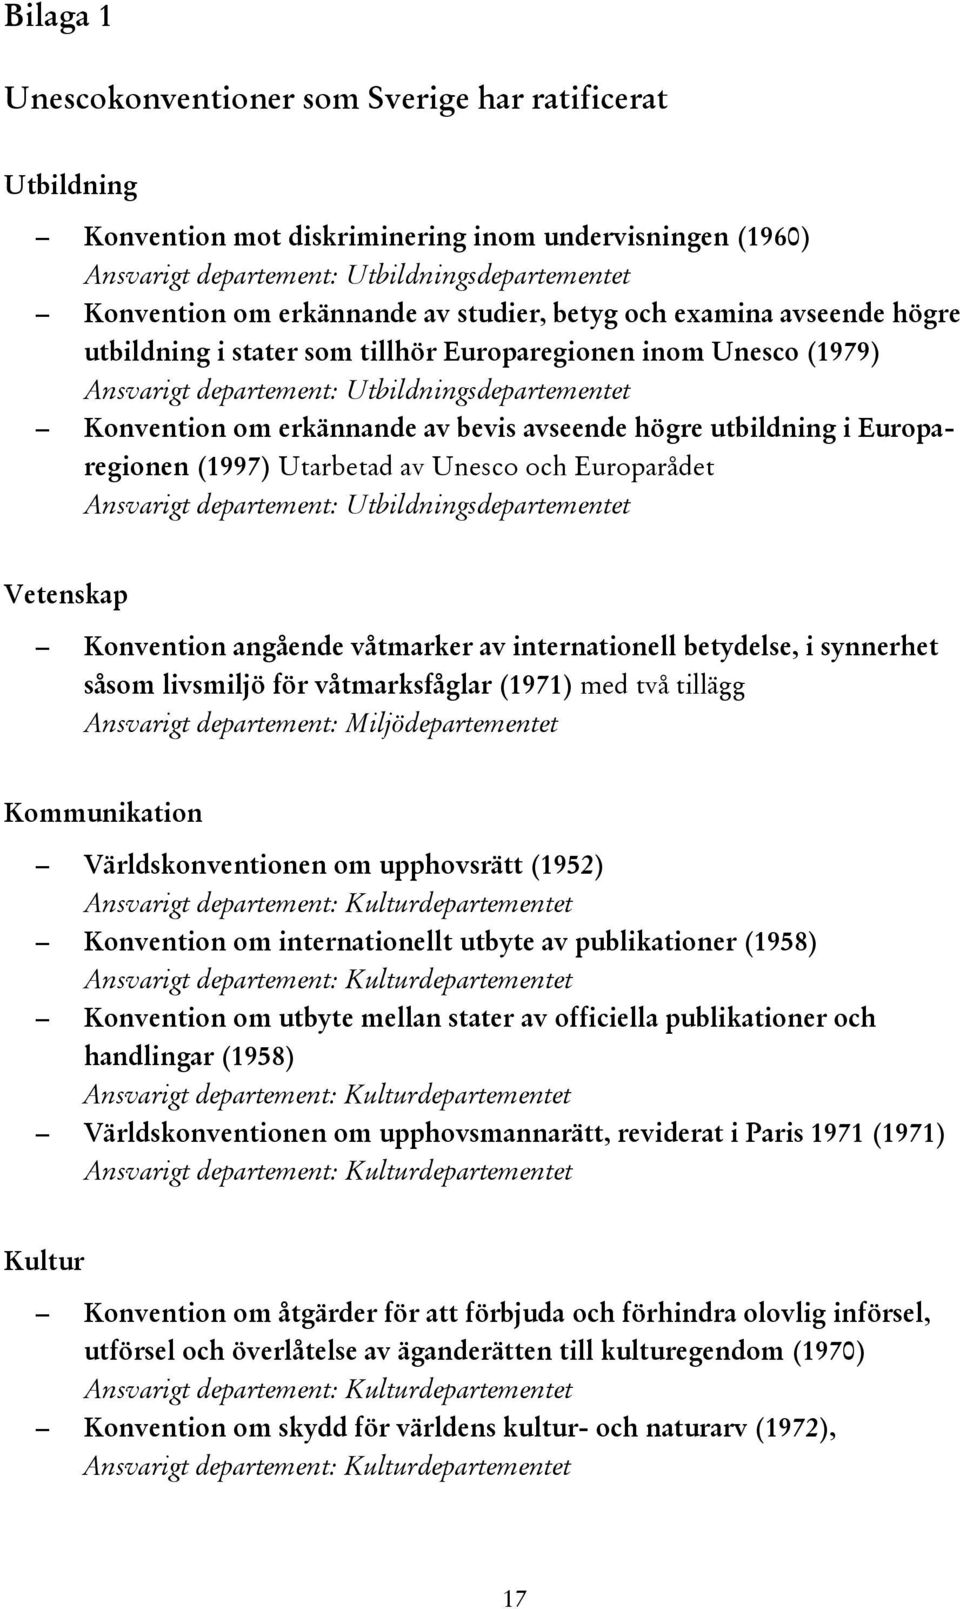 högre utbildning i Europaregionen (1997) Utarbetad av Unesco och Europarådet Ansvarigt departement: Utbildningsdepartementet Vetenskap Konvention angående våtmarker av internationell betydelse, i